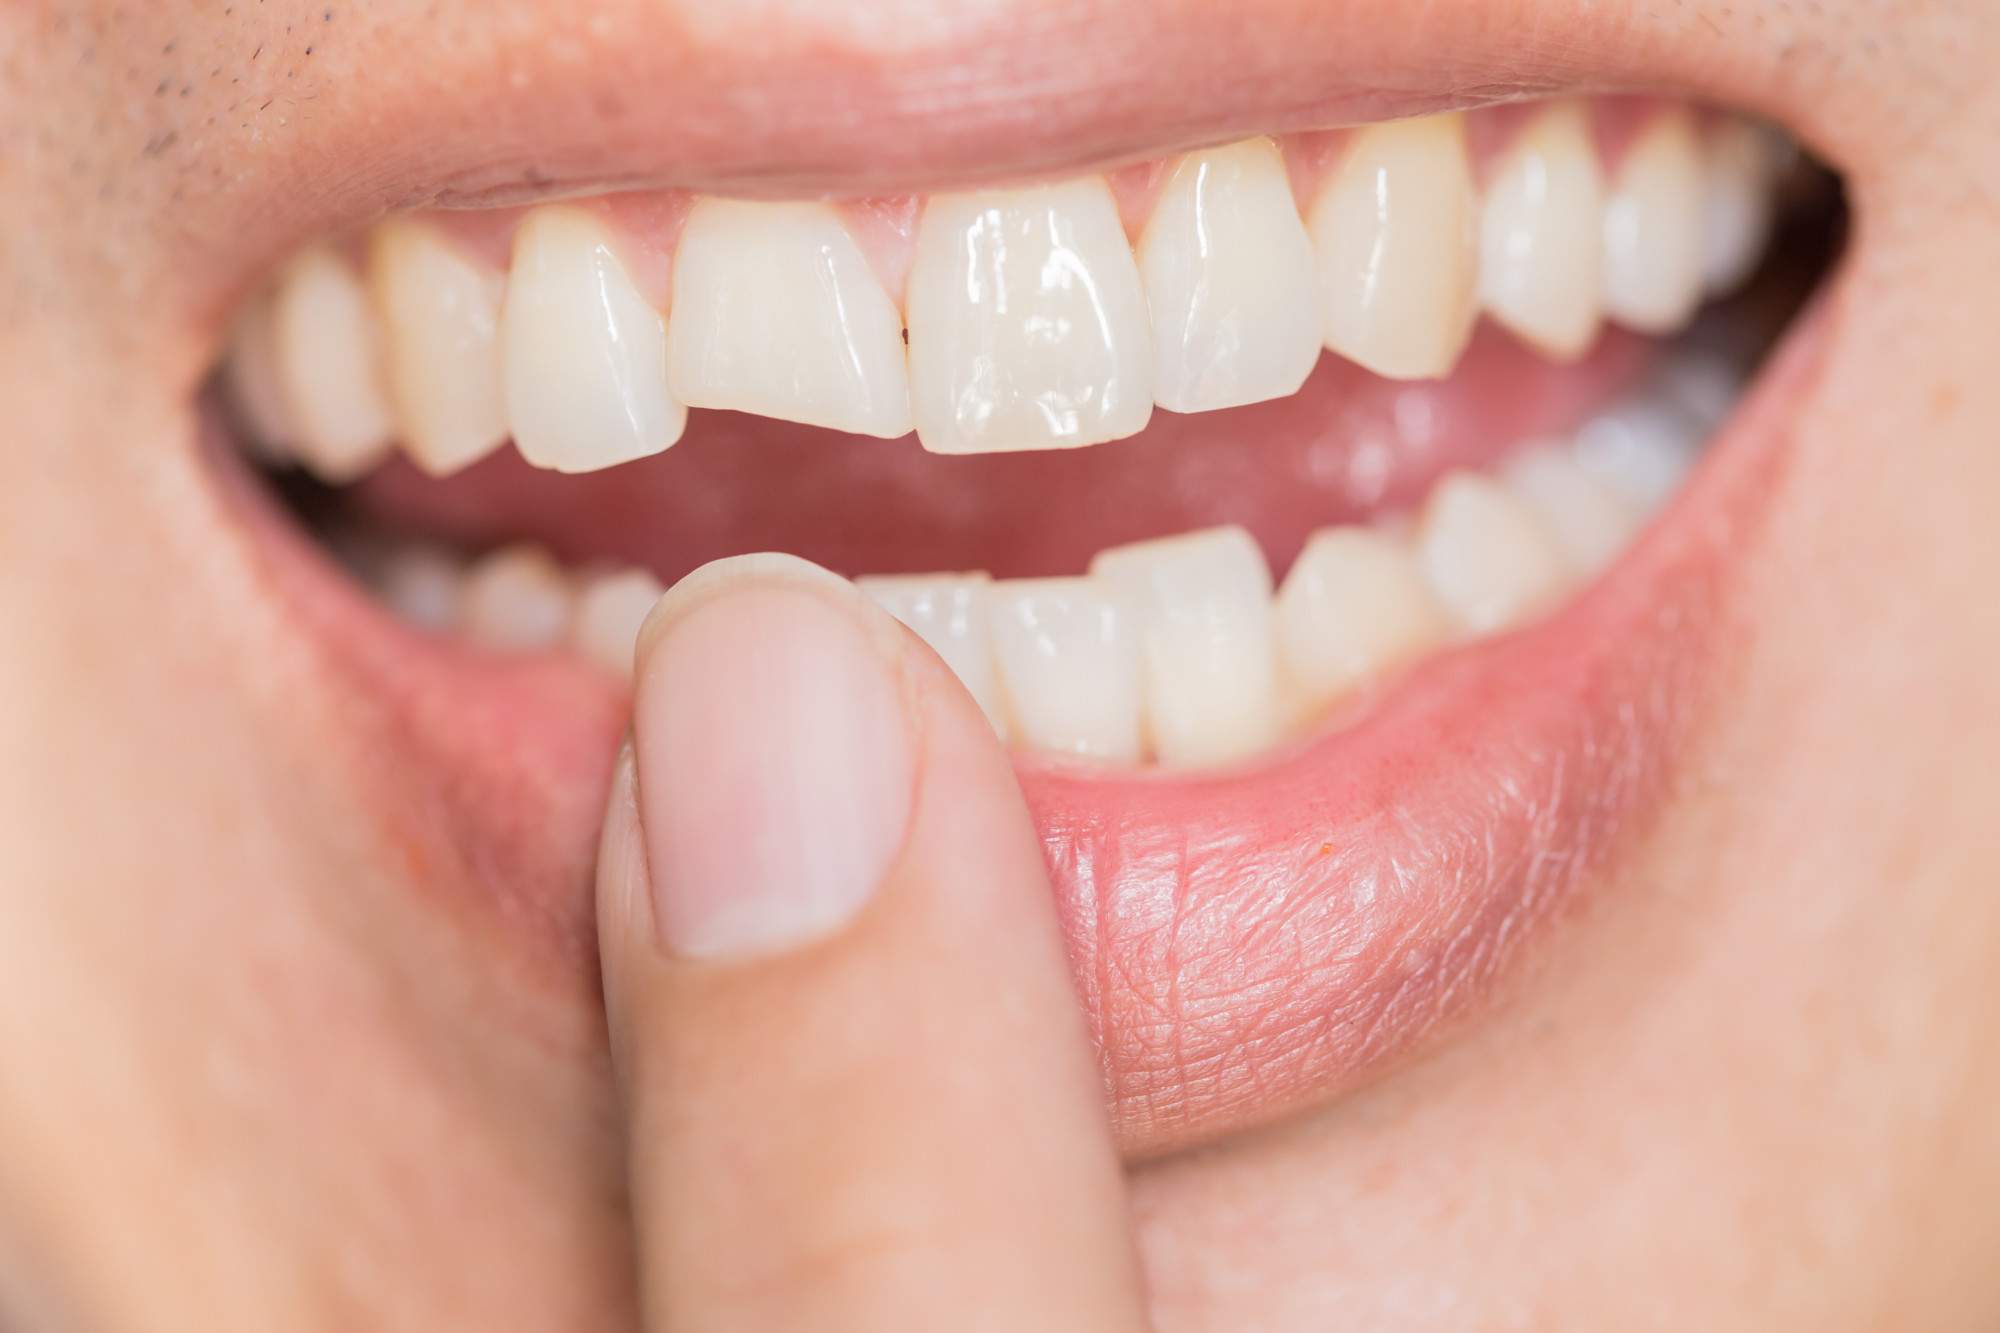 What Is the Best Way to Fix Broken Teeth?